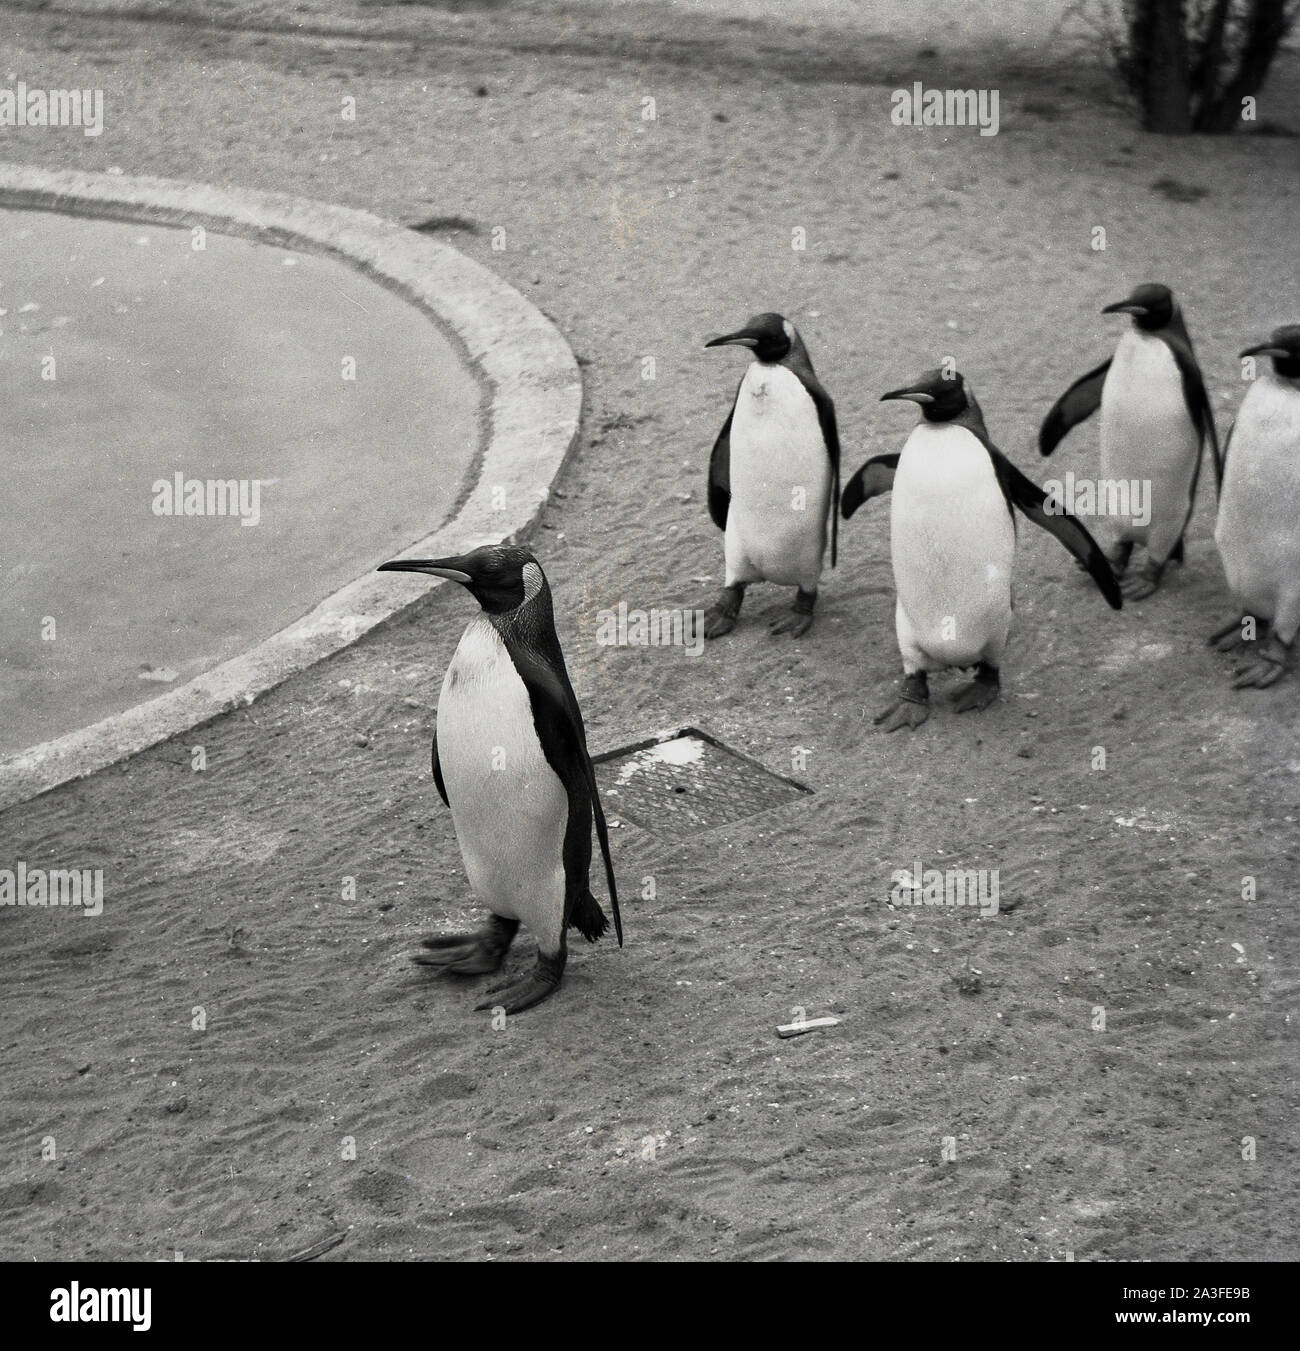 Degli anni Cinquanta, storico, 'abbiamo proprio dietro di voi capitano'....pinguini seguendo il loro leader con il loro stagno presso lo Zoo di Londra, Londra, Inghilterra, Regno Unito. I Pinguini sono adorabili creature e loro tremolanti a piedi e smoking-come l'apparenza dà loro un singolare appello e qualcosa che non può essere visto in altri animali. Foto Stock